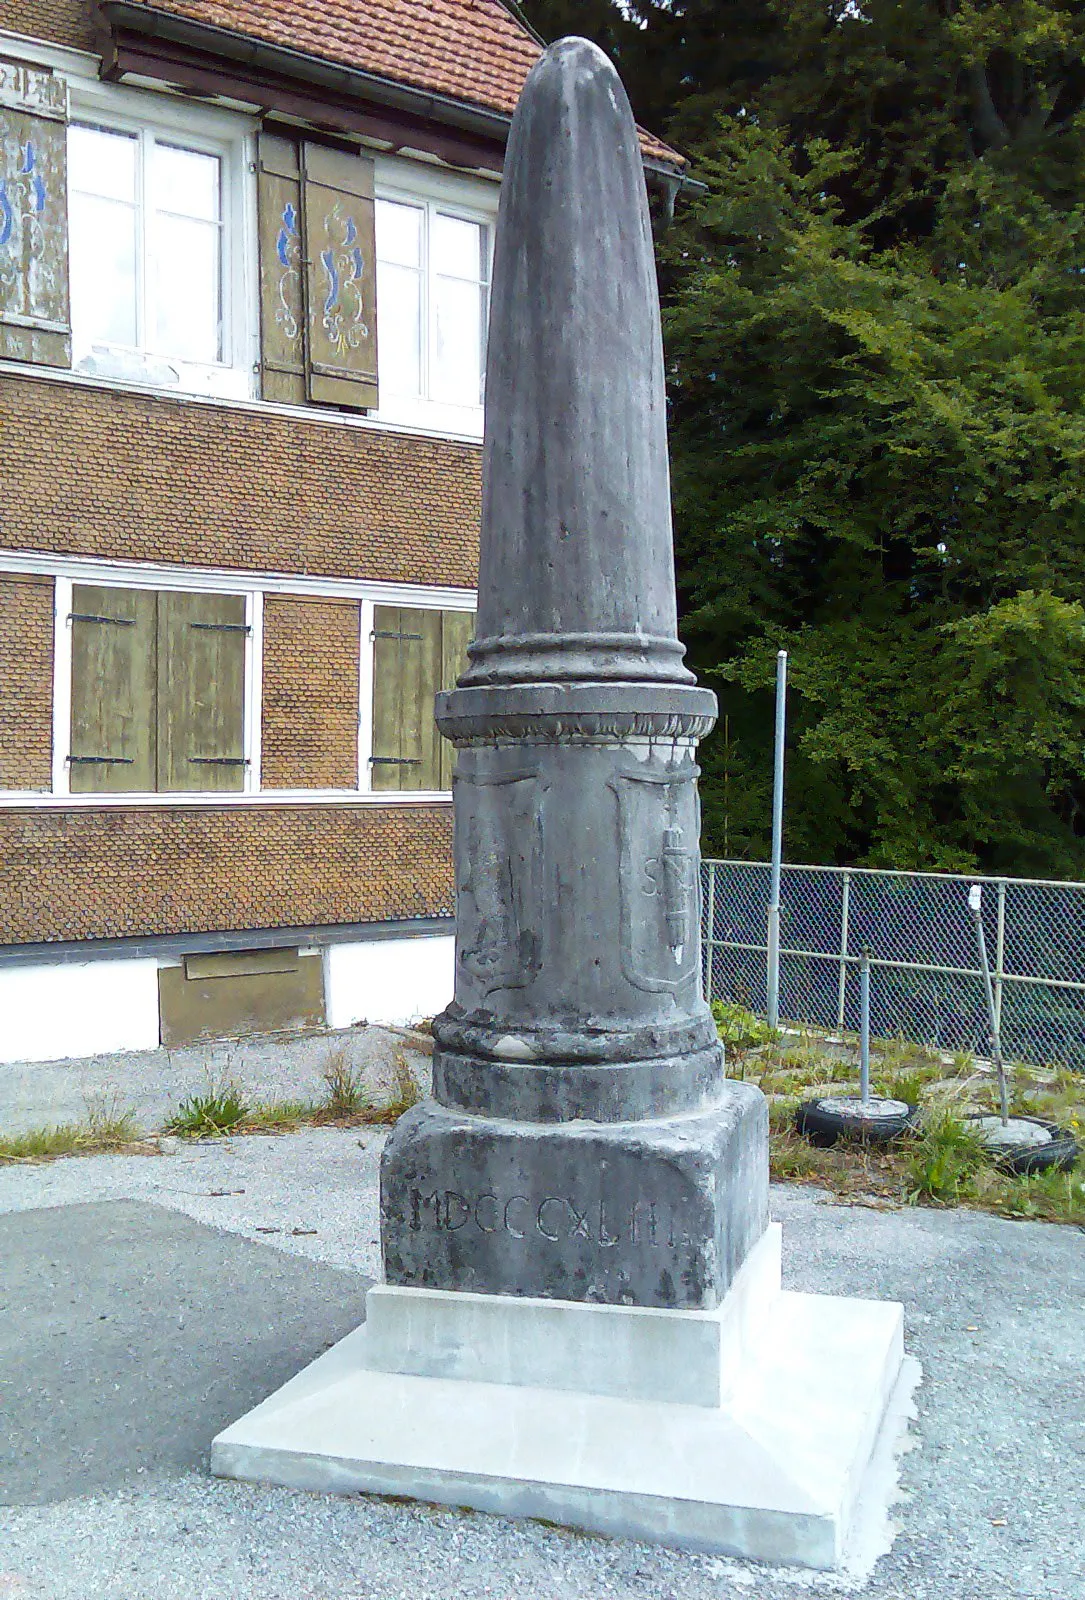 Photo showing: Auf dinem Sockel steht ein ca. 3 m hoher Stein-Obelisk, Inschrift; unten Jahreszahl mit römischen Ziffern 'MDCCCXLIII', darüber die beiden Kantonswappen AI und AR kombiniert (links) SG (rechts) in Relief-Form, auf der Rückseite (Ost) im unteren Teil 'Gz Kp +', im oberen Teil in einem Schweizer Wappen '1939'